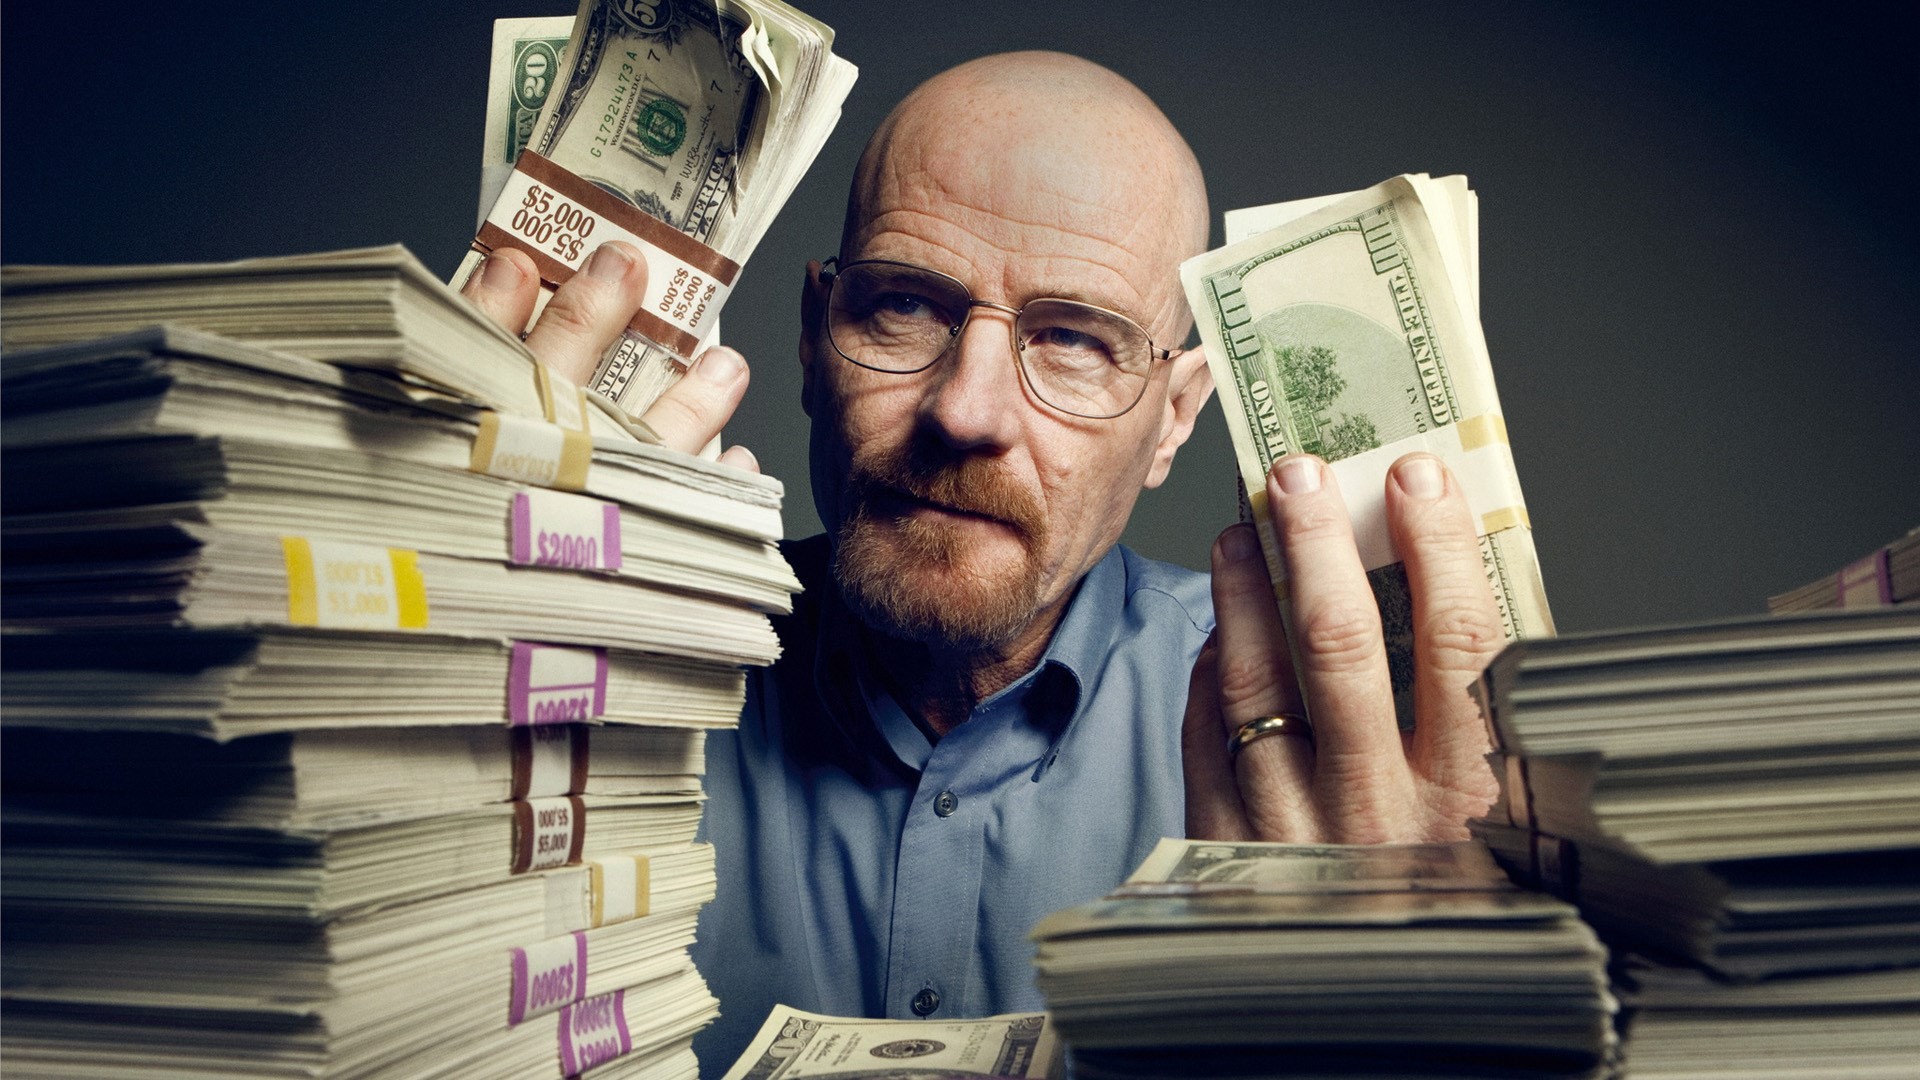 Breaking Bad, Walter White, Heisenberg, Bryan Cranston, Money, TV Wallpaper